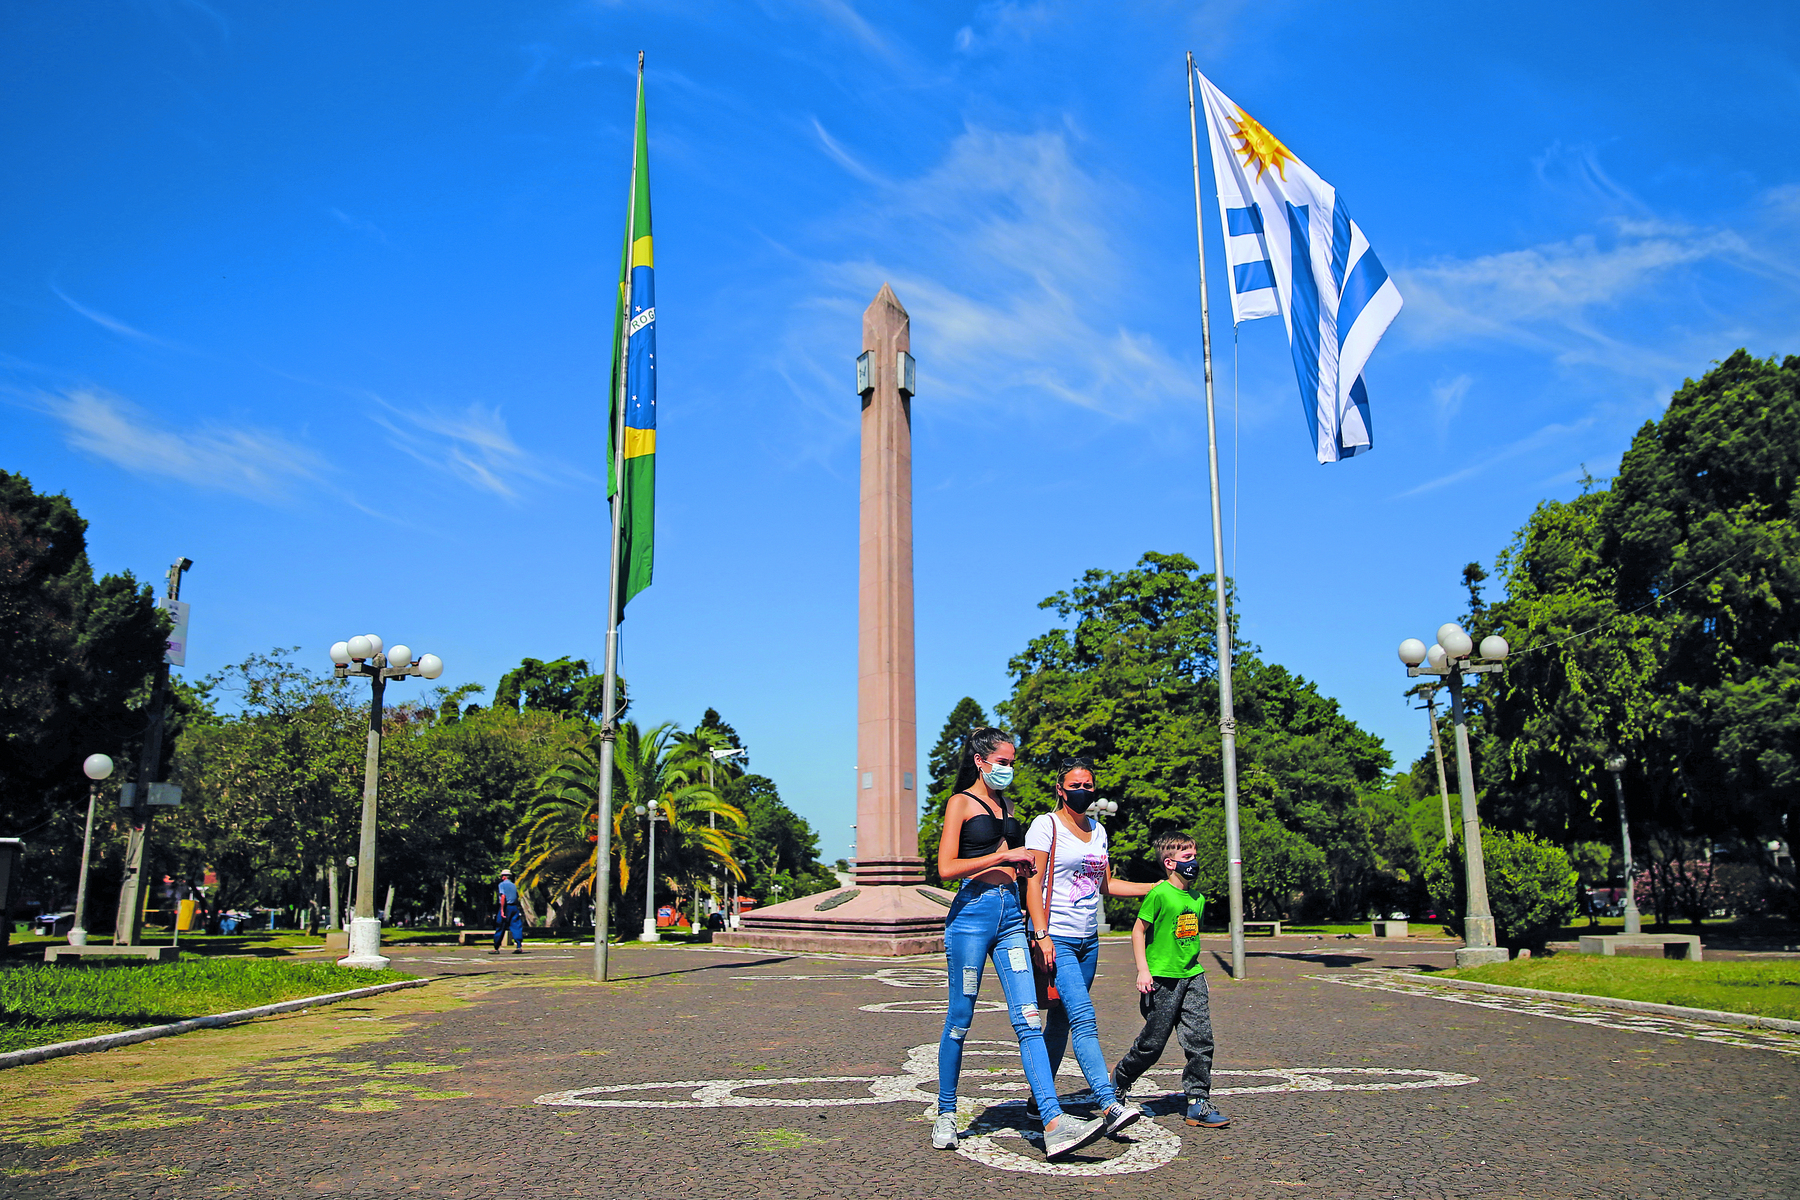 Fotografia. Uma jovem, uma mulher e uma criança, em pé sobre uma praça, à frente de um monumento longo e vertical, cujas laterais apresentam duas hastes com as bandeiras do Brasil e Uruguai. Às laterais, áreas arborizadas.